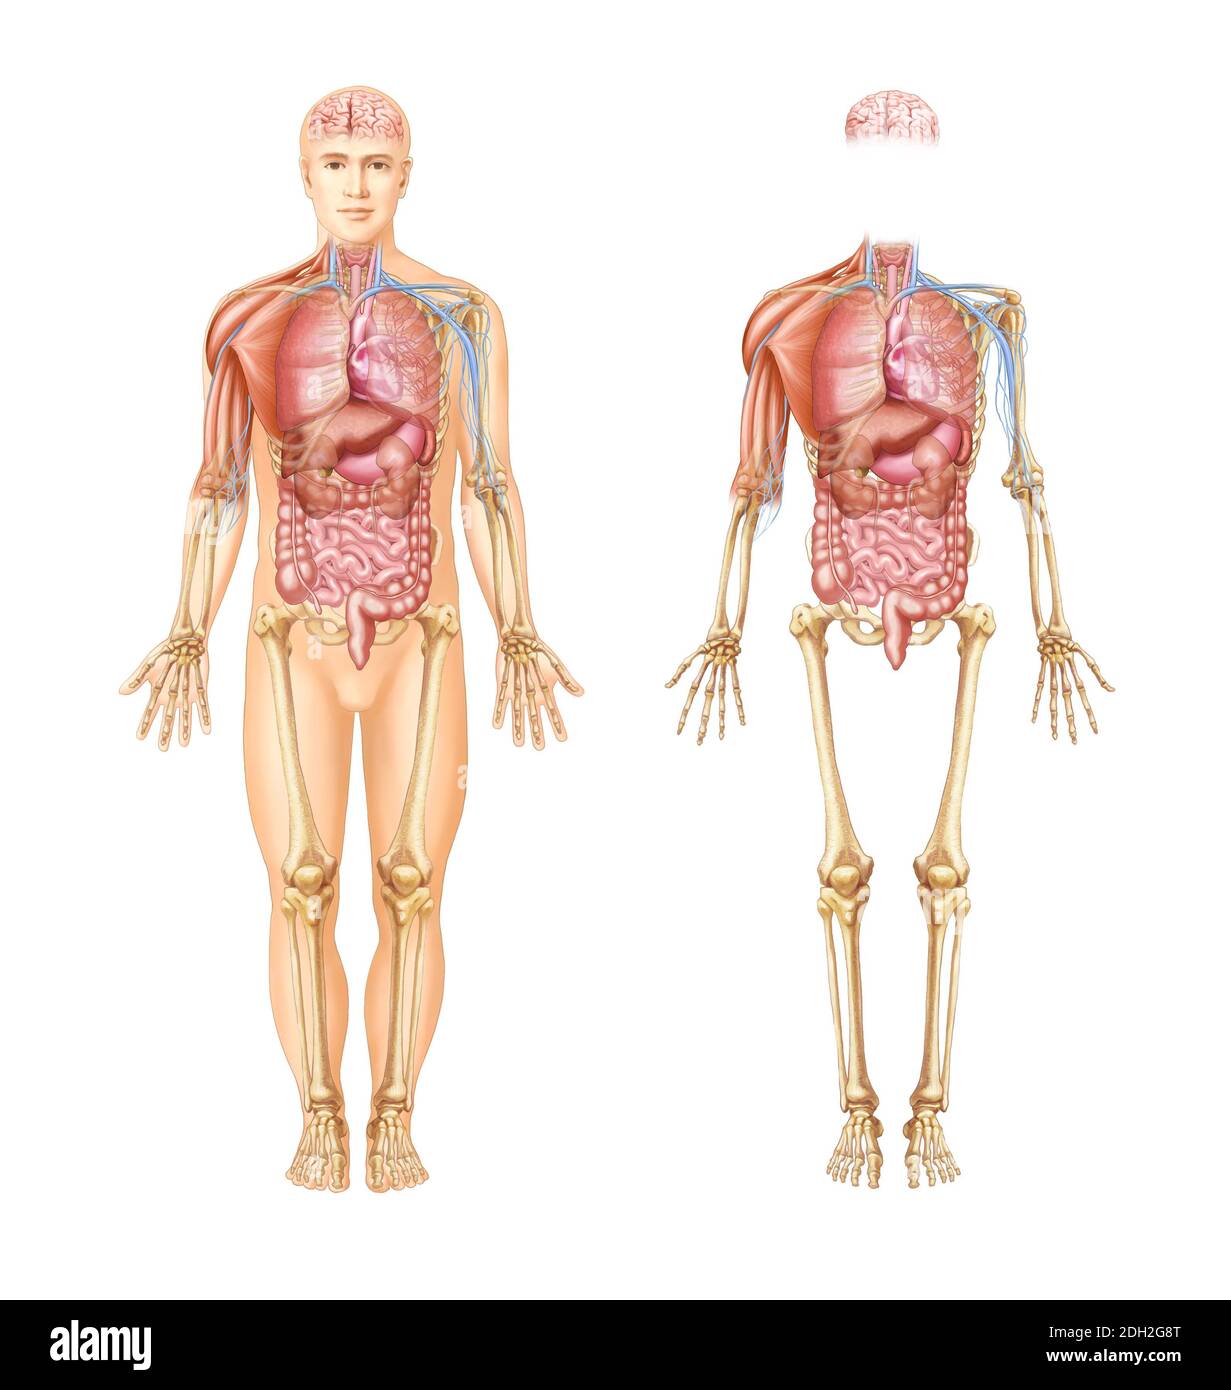 illustrazioni anatomiche di organi, muscoli, nervi e ossa del corpo umano Foto Stock